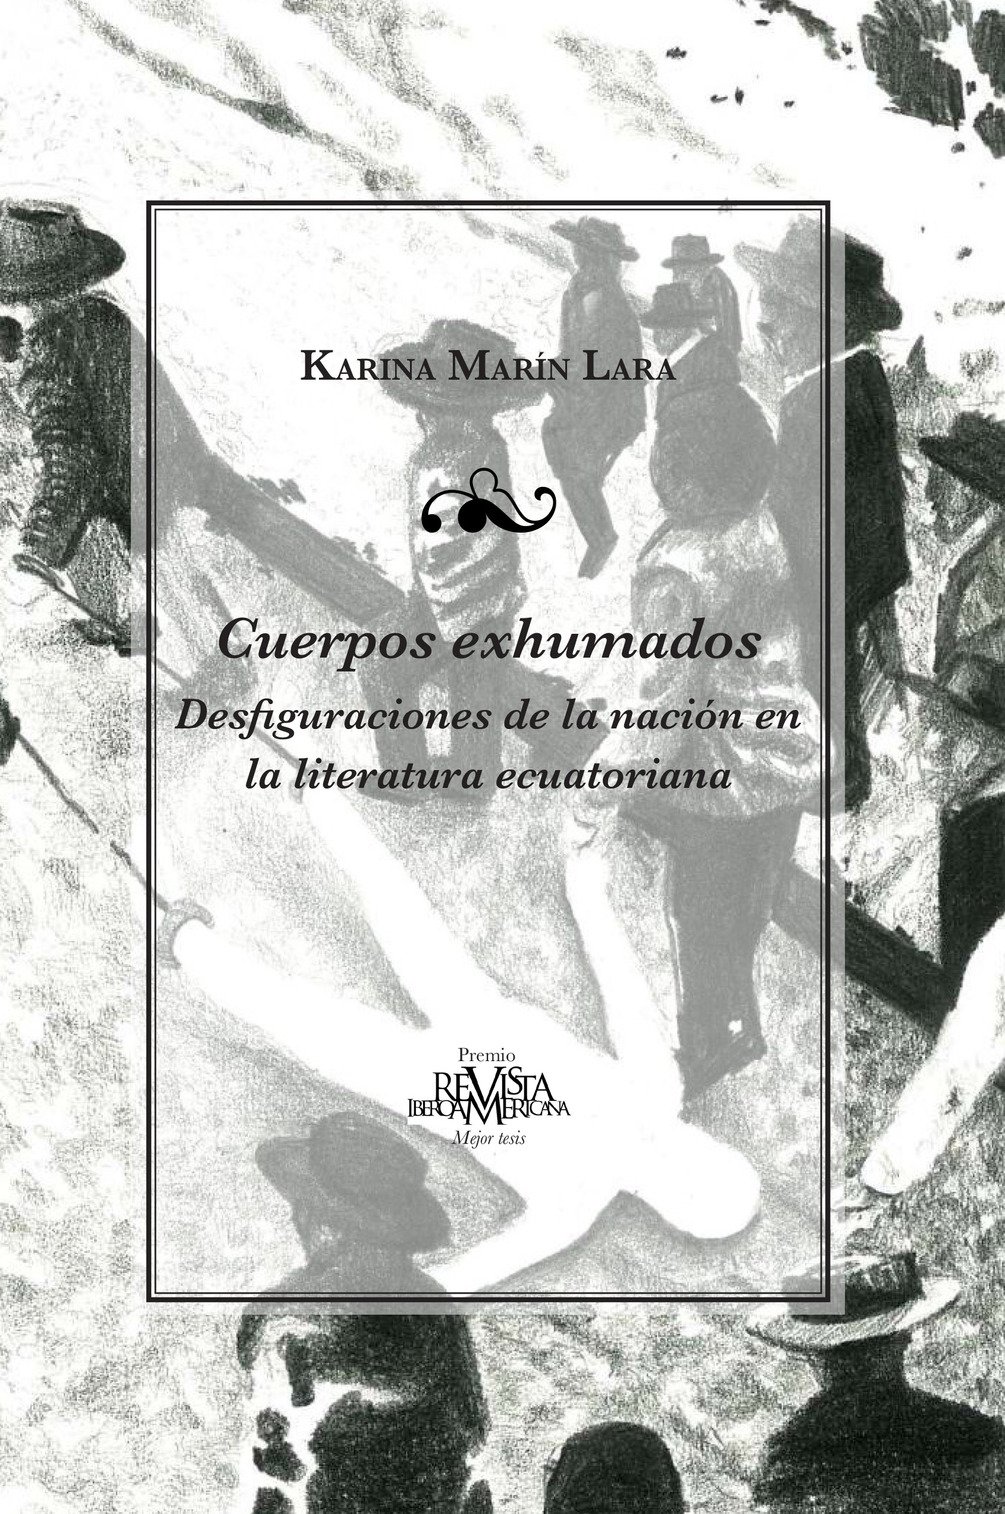 Karina Marín publica Cuerpos exhumados: Desfiguraciones de la nación en la literatura ecuatoriana, premio Revista Iberoamericana